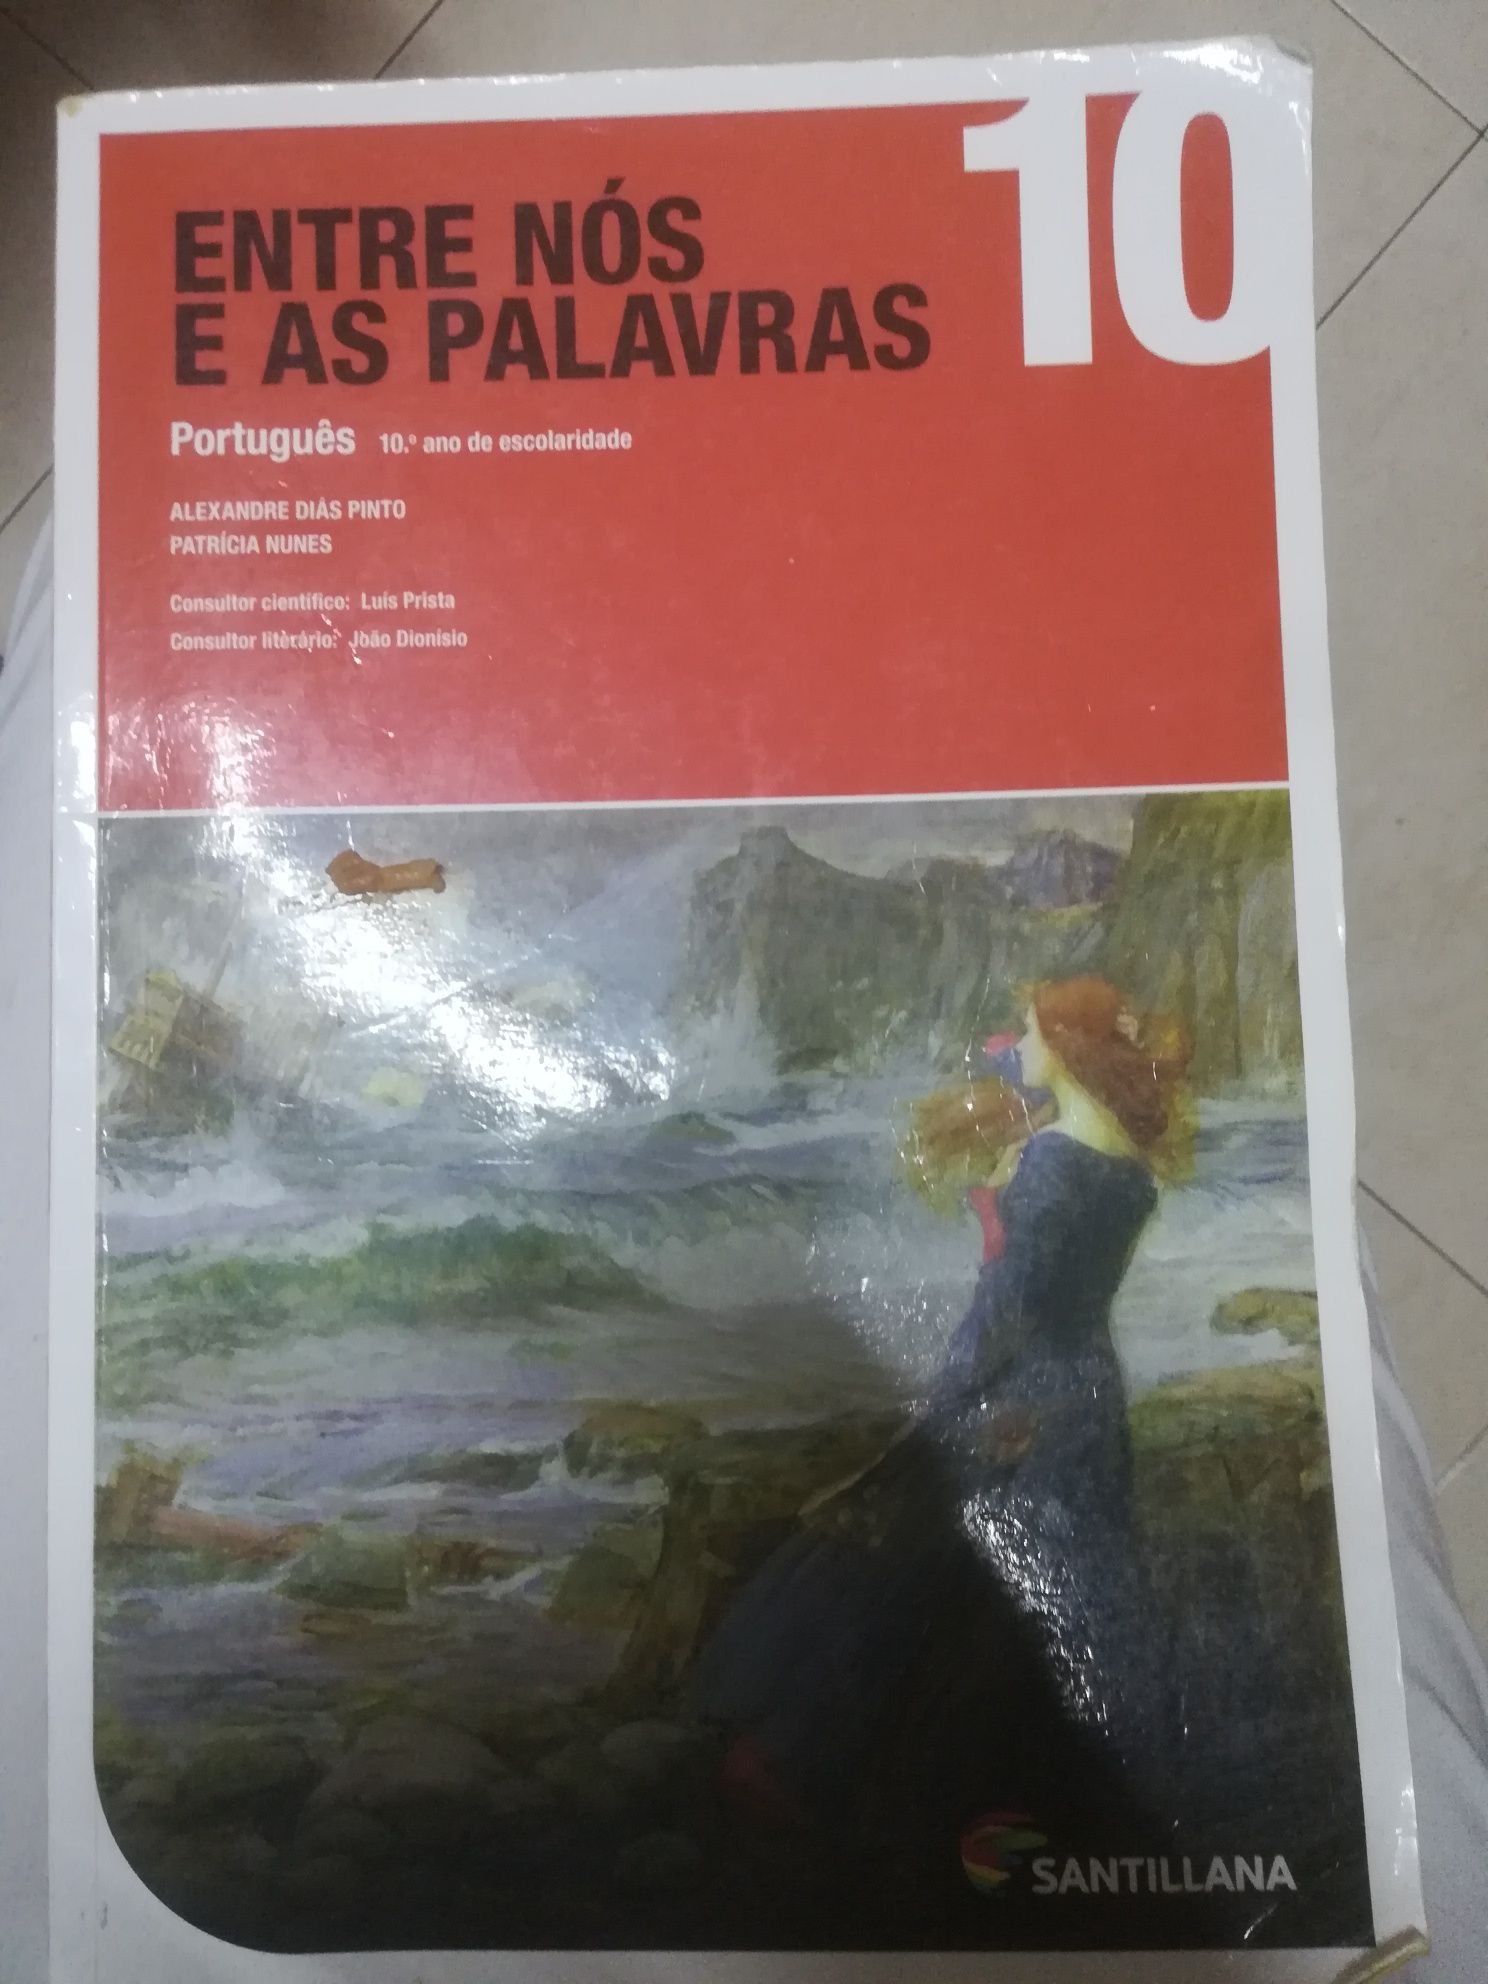 Entre nós e as palavras 10, manual de português da Santillana